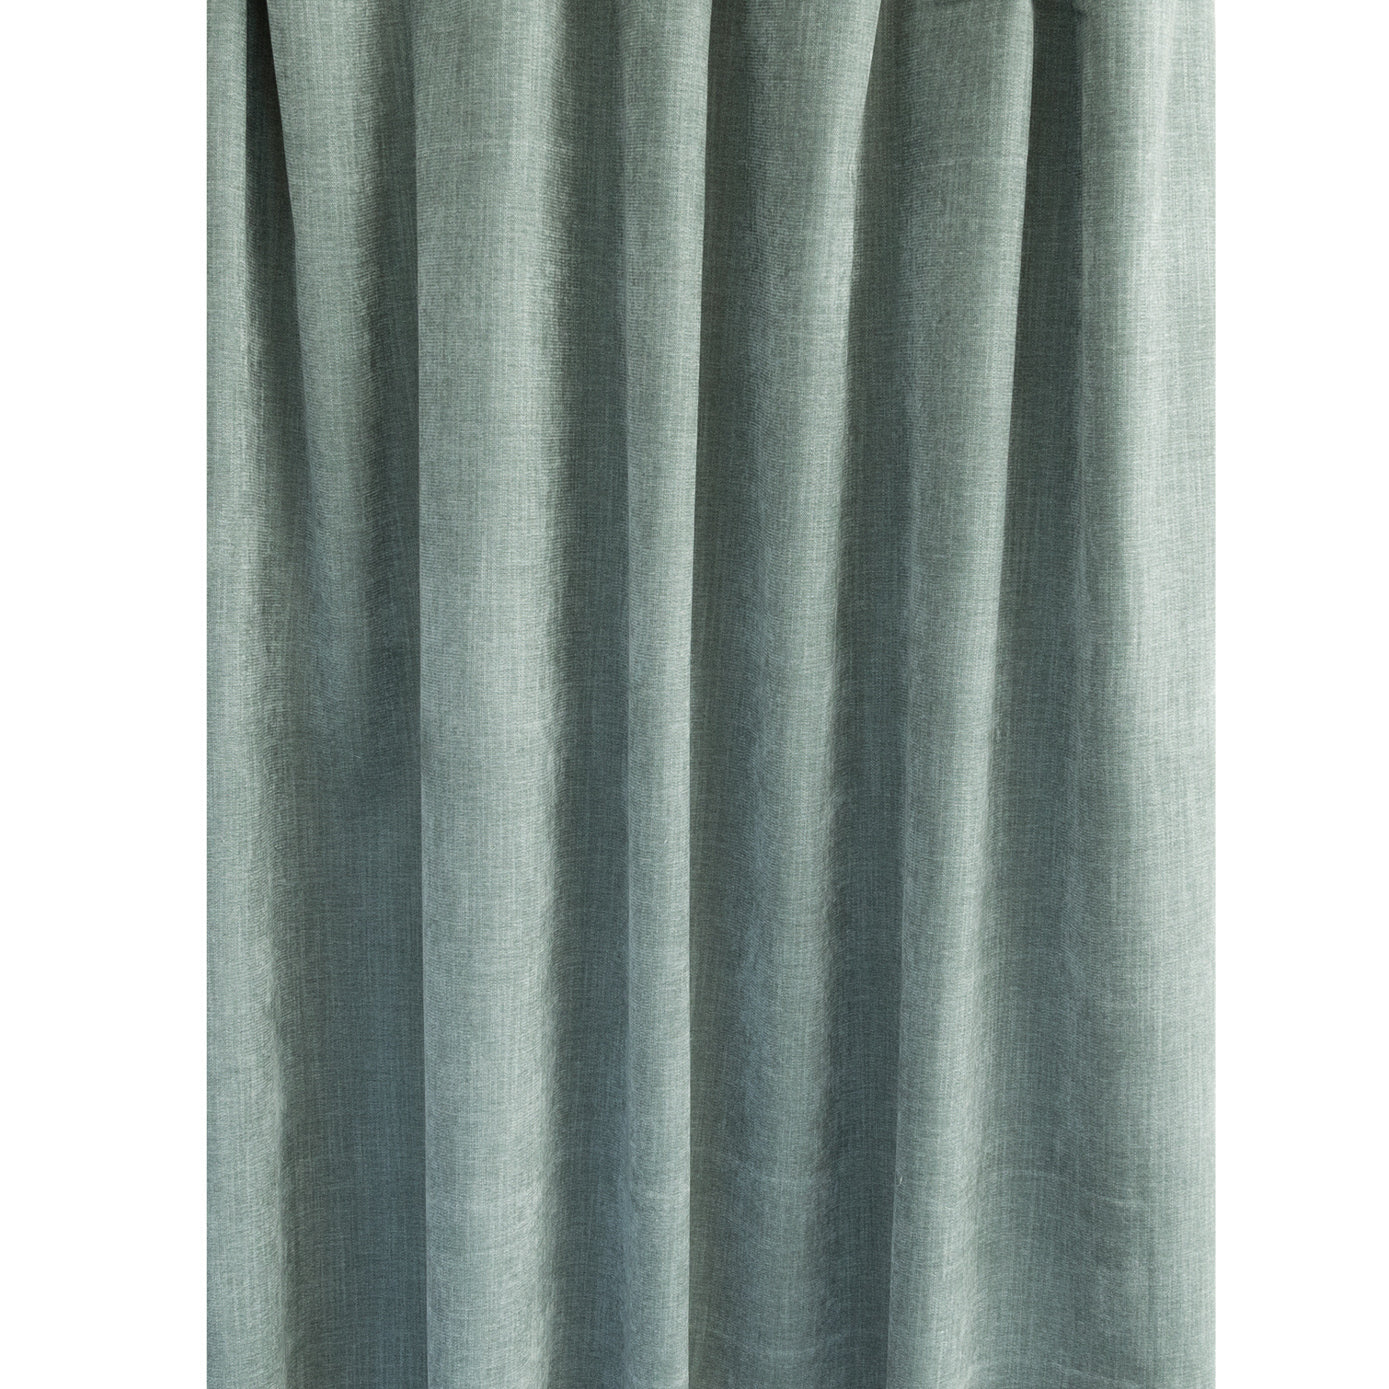 Orson Velvet, Celadon, a gray green drapery weight velvet from Tonic Living